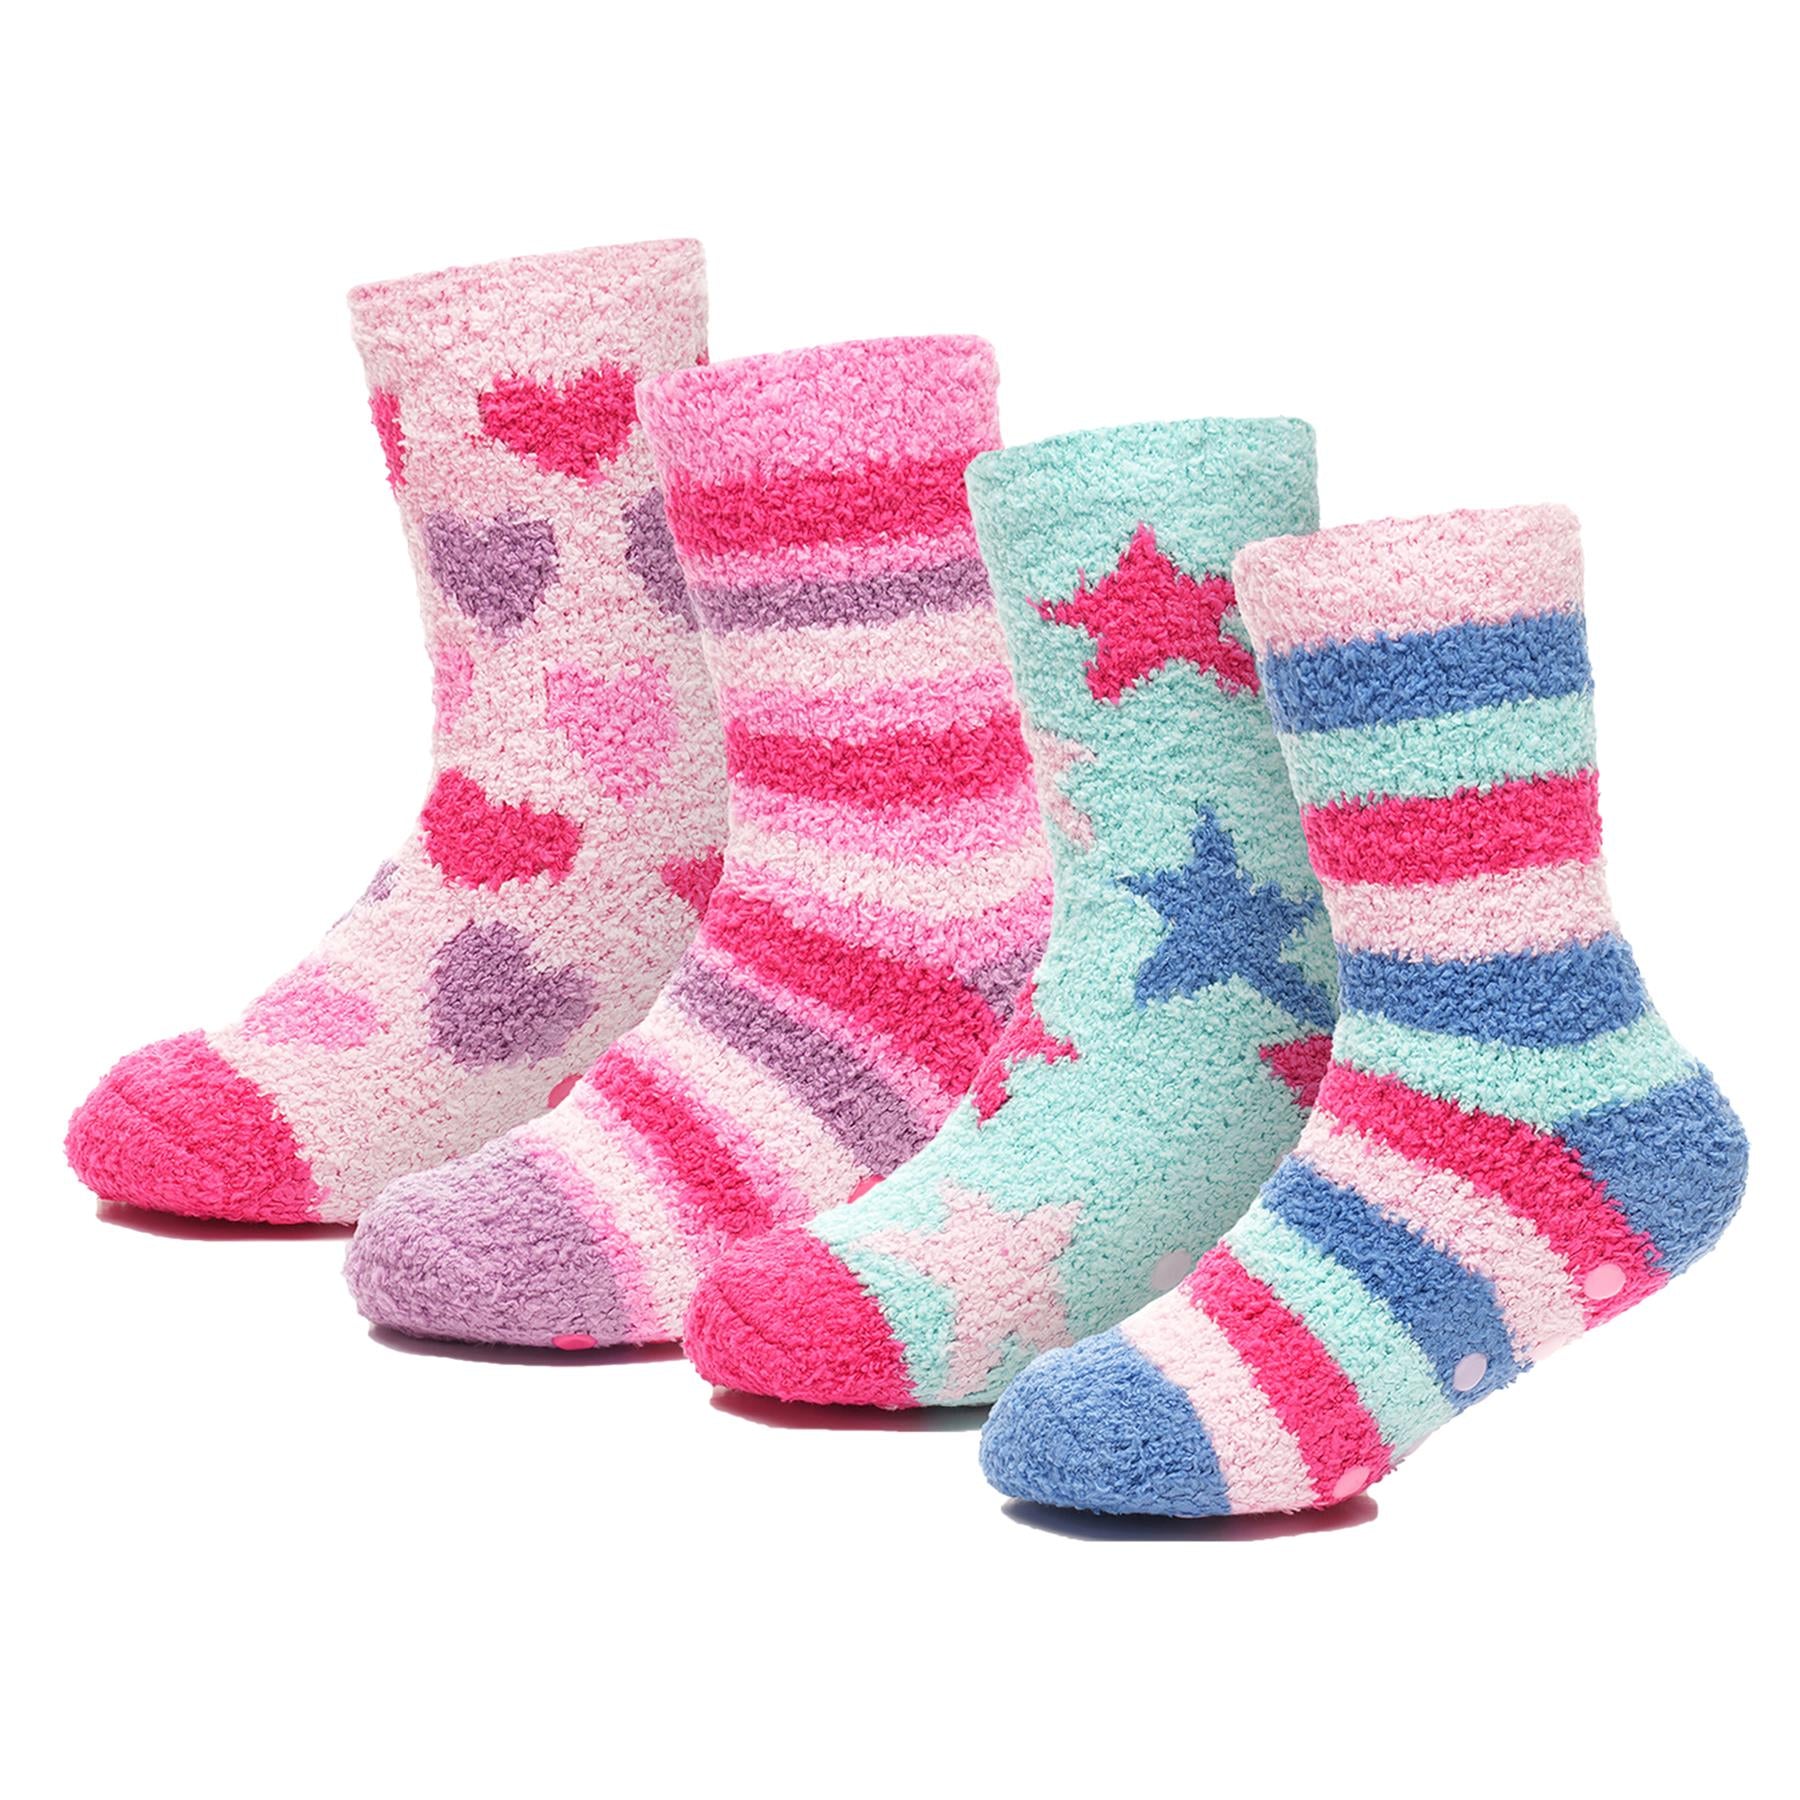 Kids Girls Cosy Socks Non-Skid Gripper Pack of 2 Super Soft Fluffy Slipper Socks